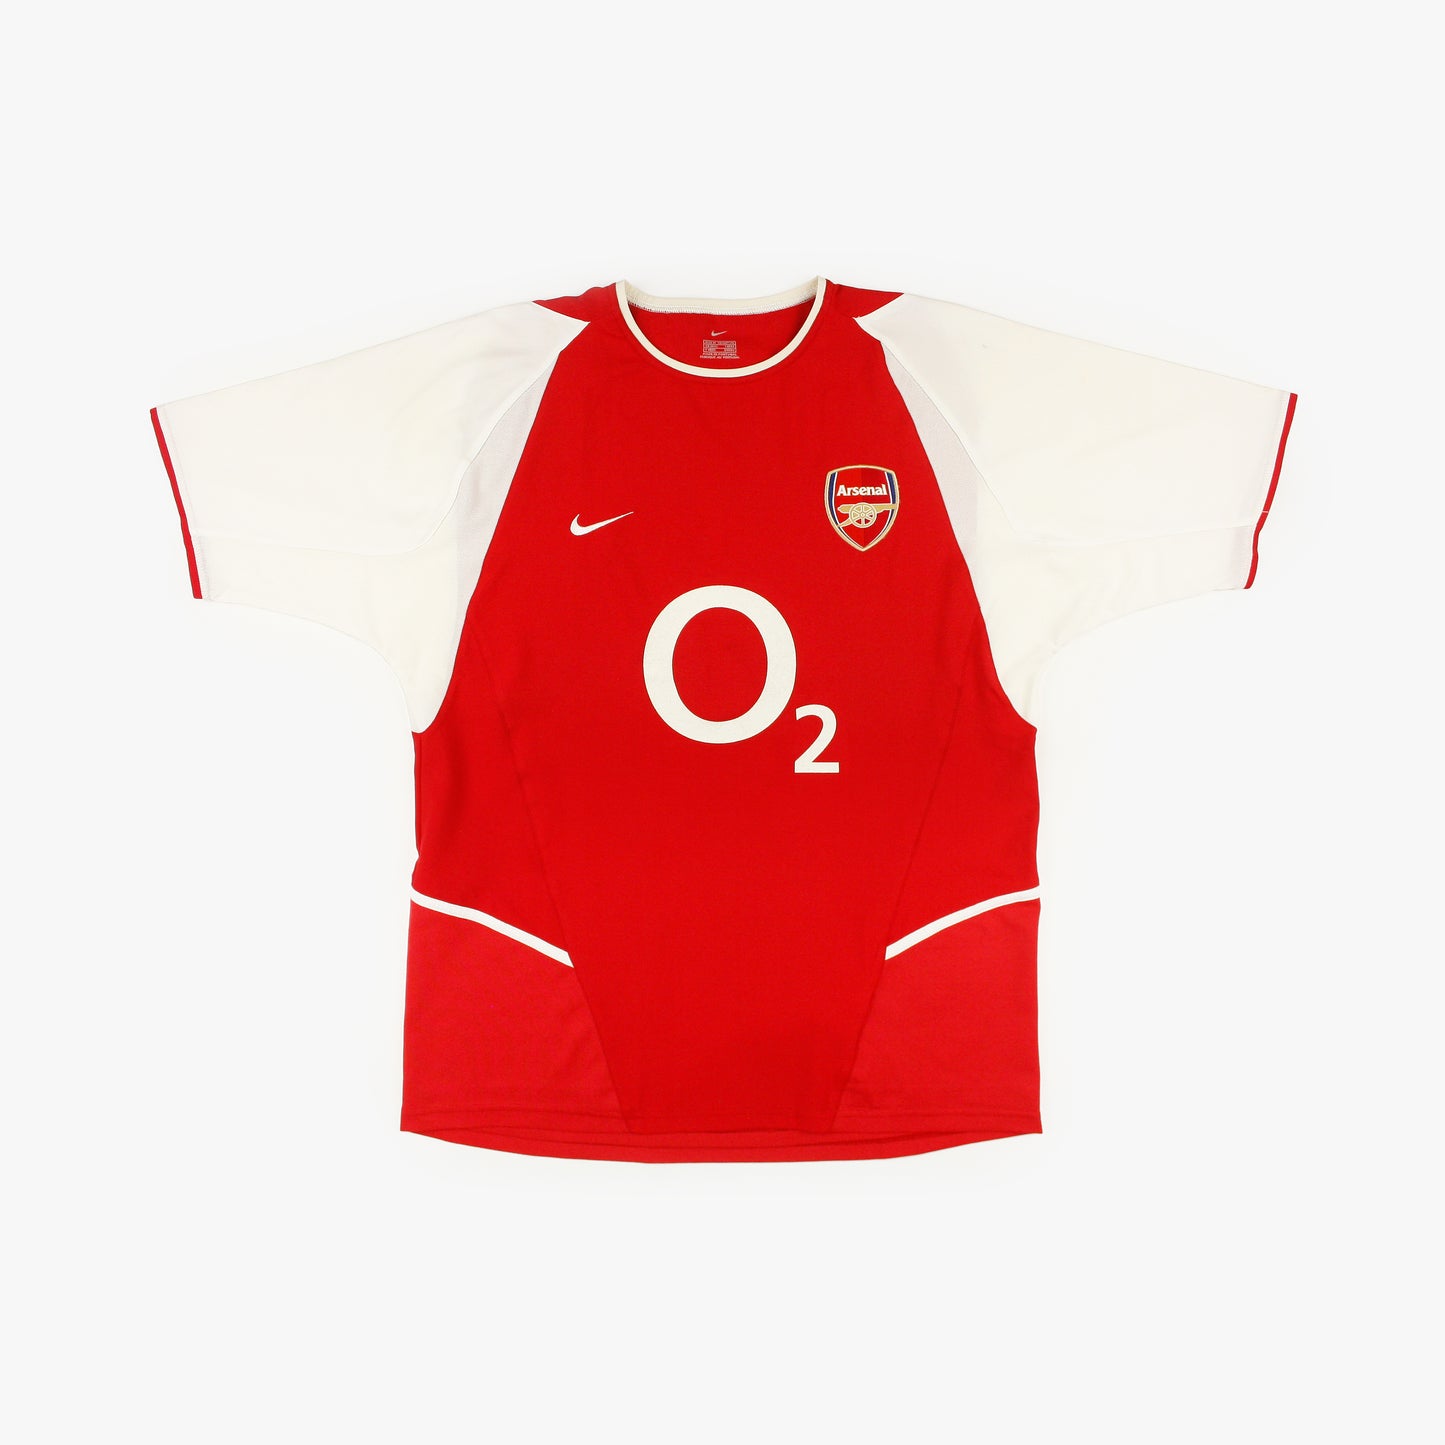 Arsenal 02/04 • Camiseta Local • M